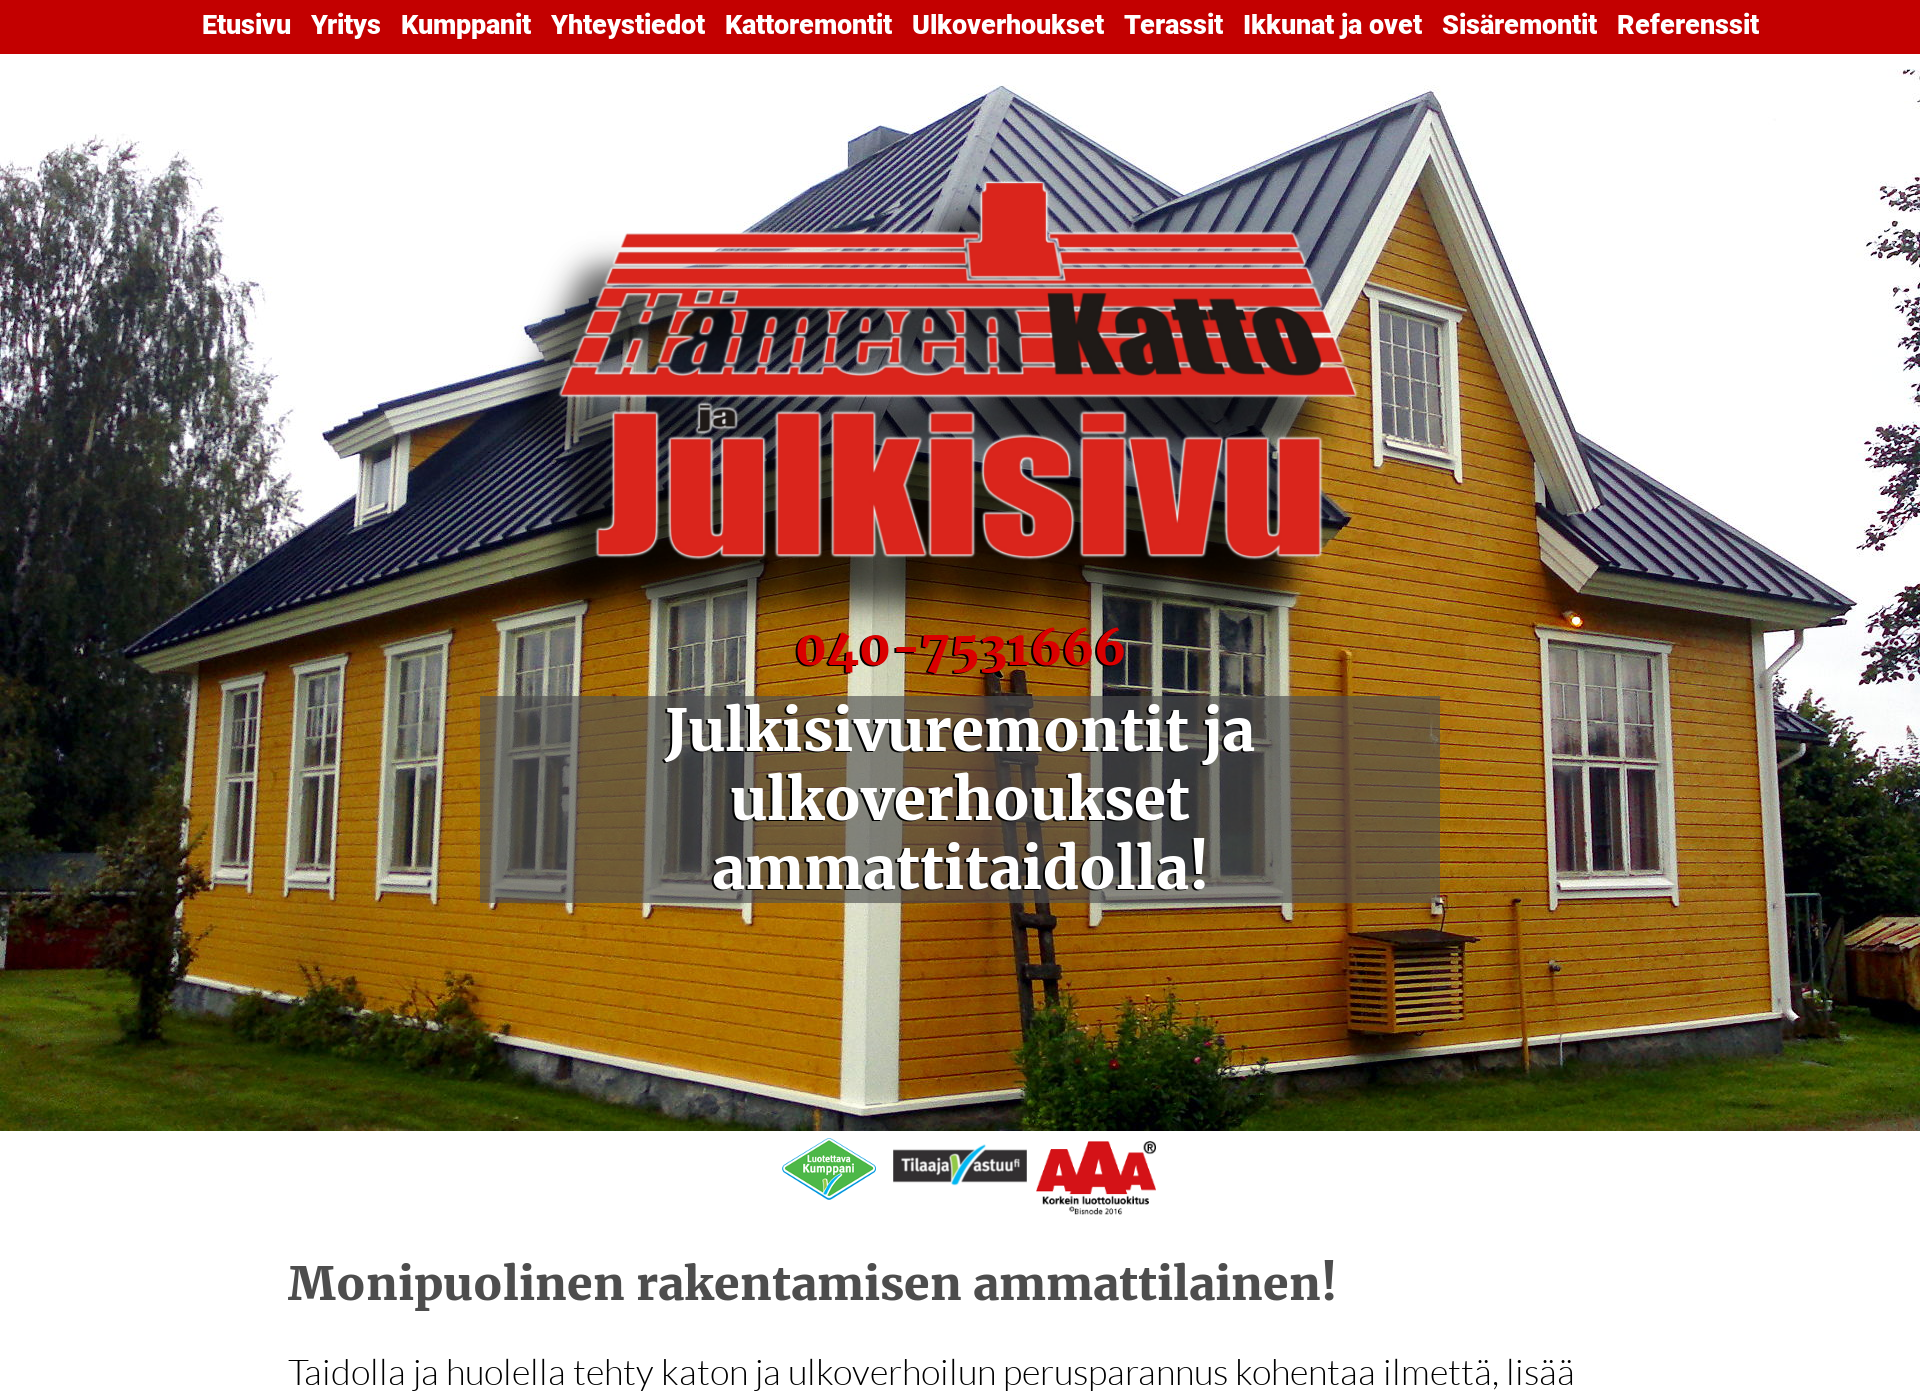 Screenshot for hameenkattopalvelu.fi